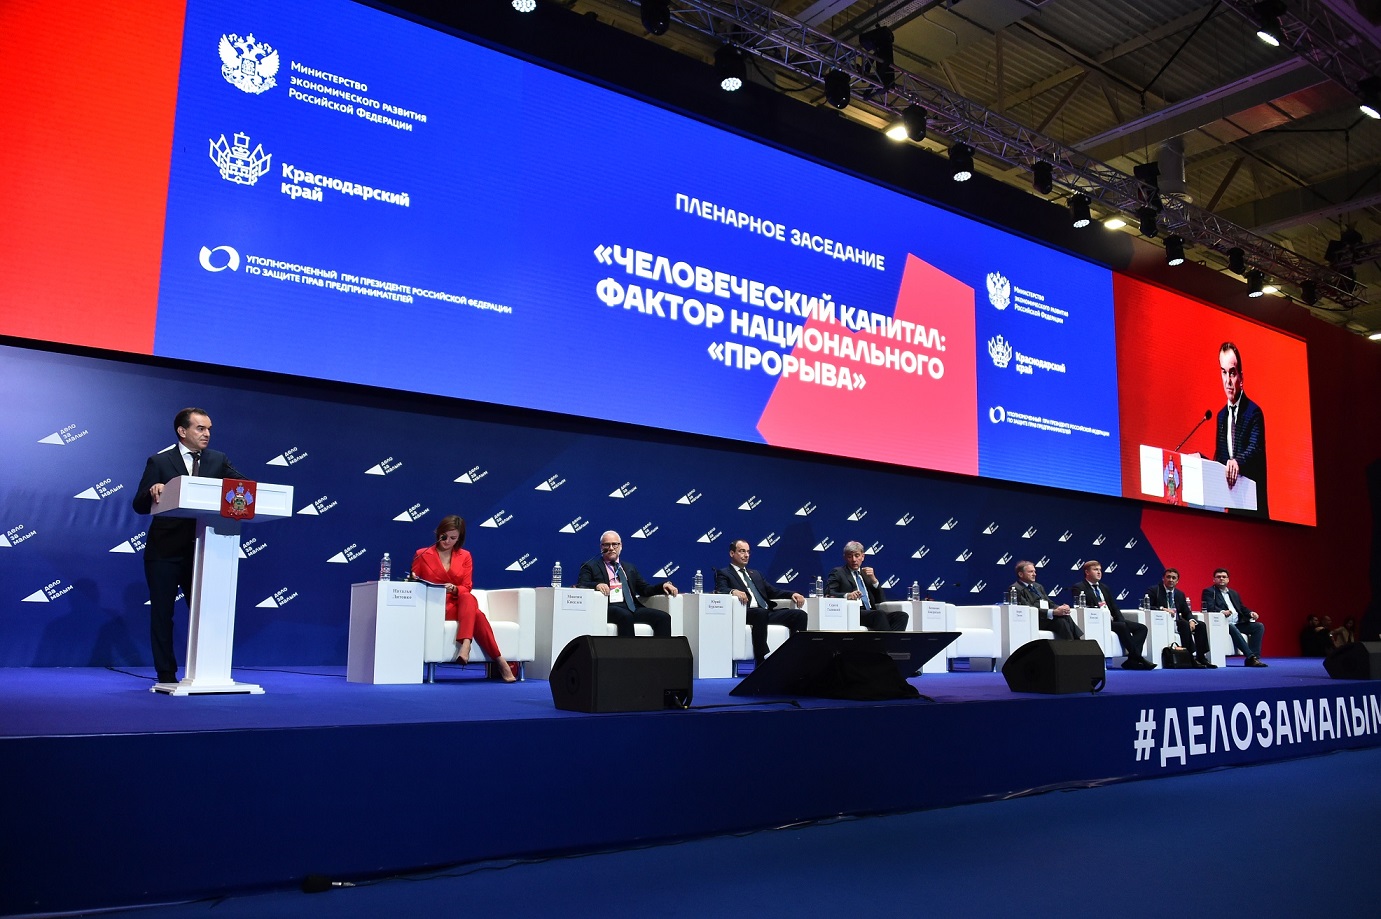 «Дело за малым»: бизнес-форум в Краснодаре вышел на новый уровень